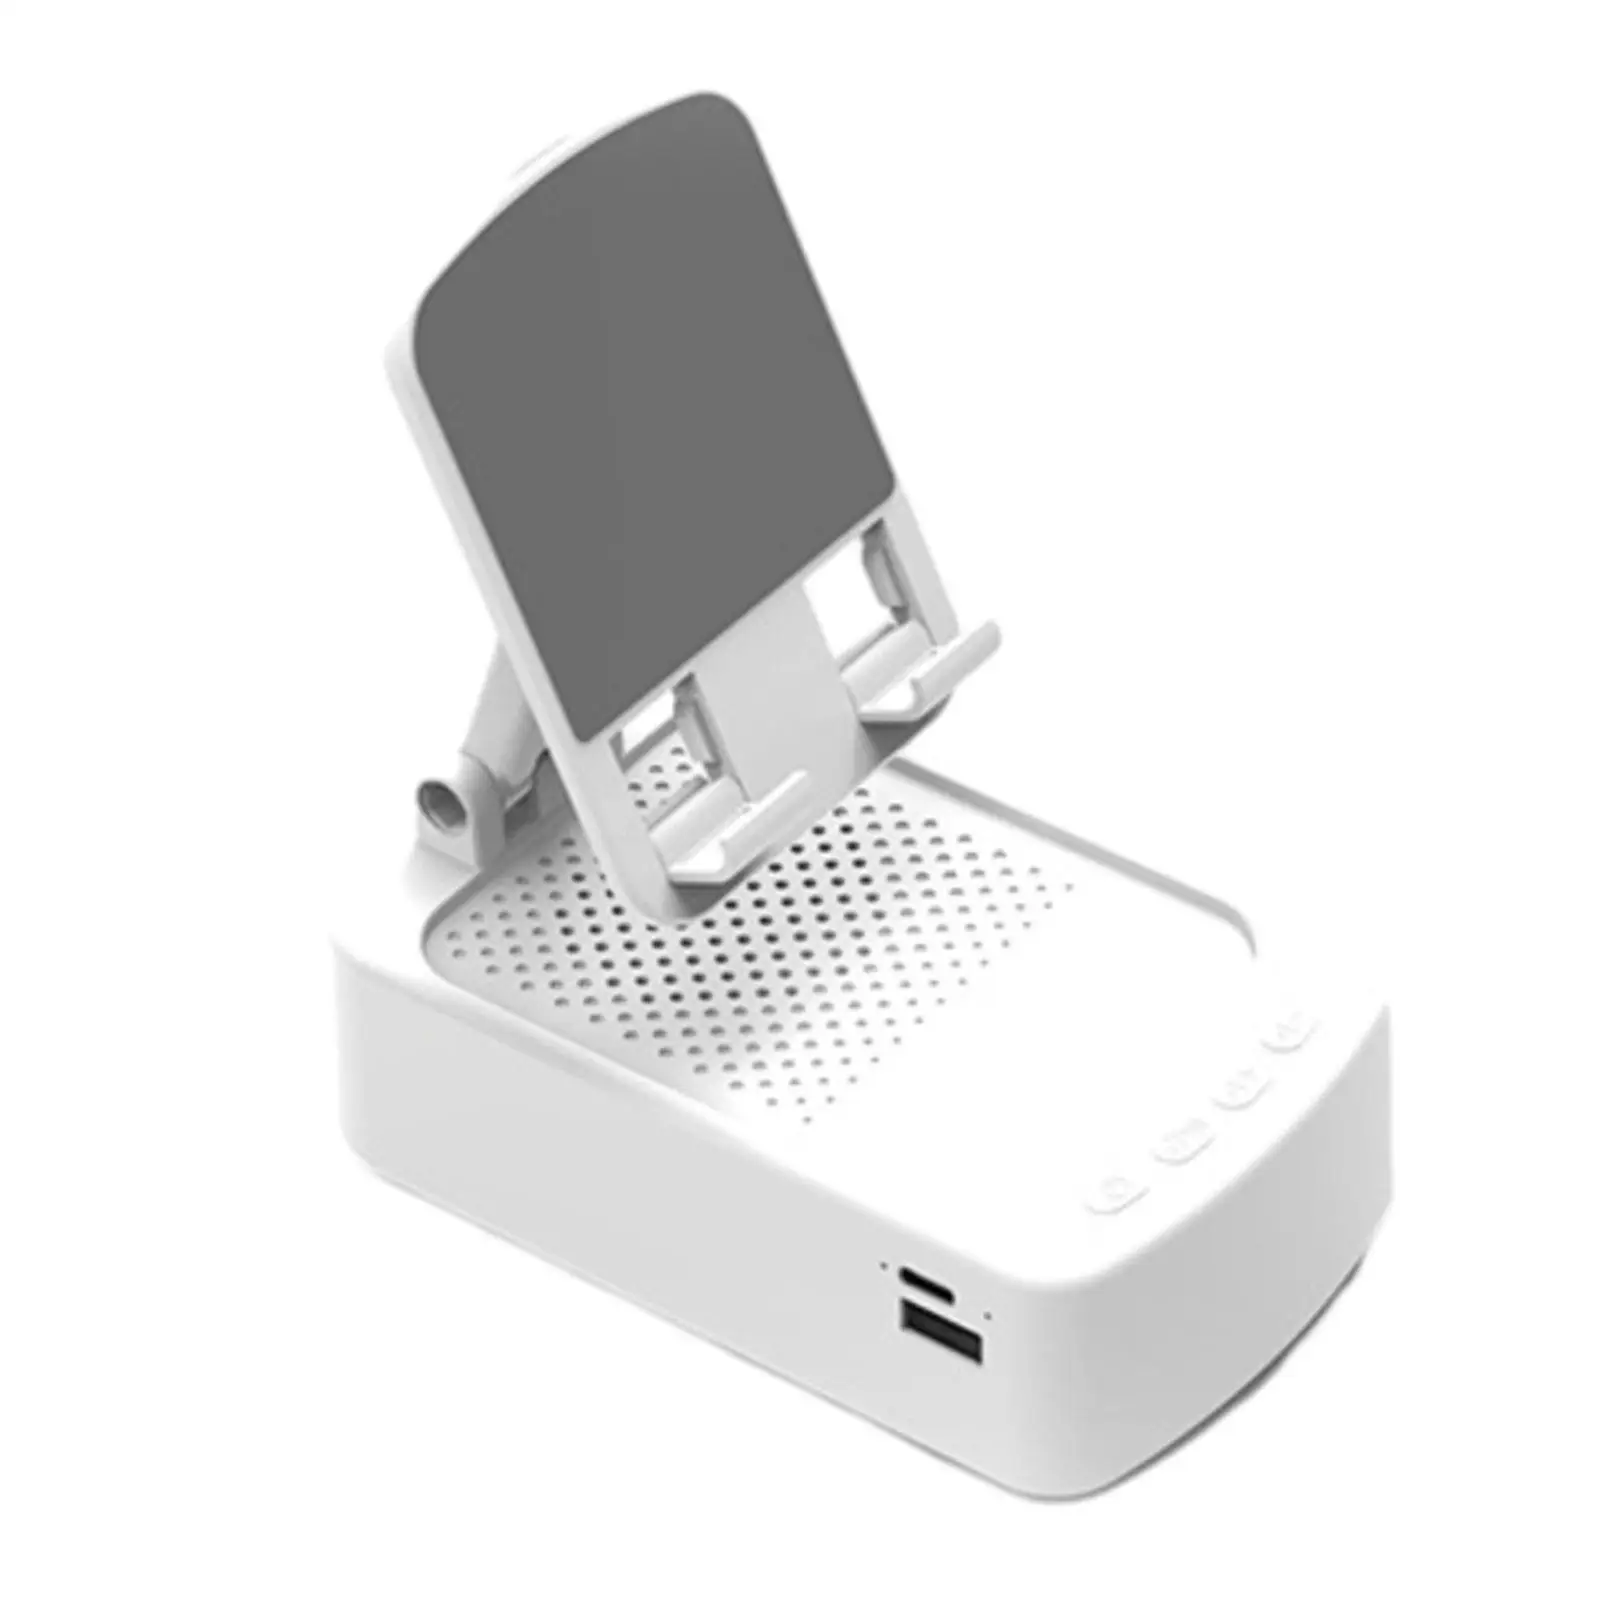 Phone Desk Holder with Sound Amplifier Desktop Phone Support Anti Slip Base Folding Phone Stand for Entrance Desk Bedroom Office